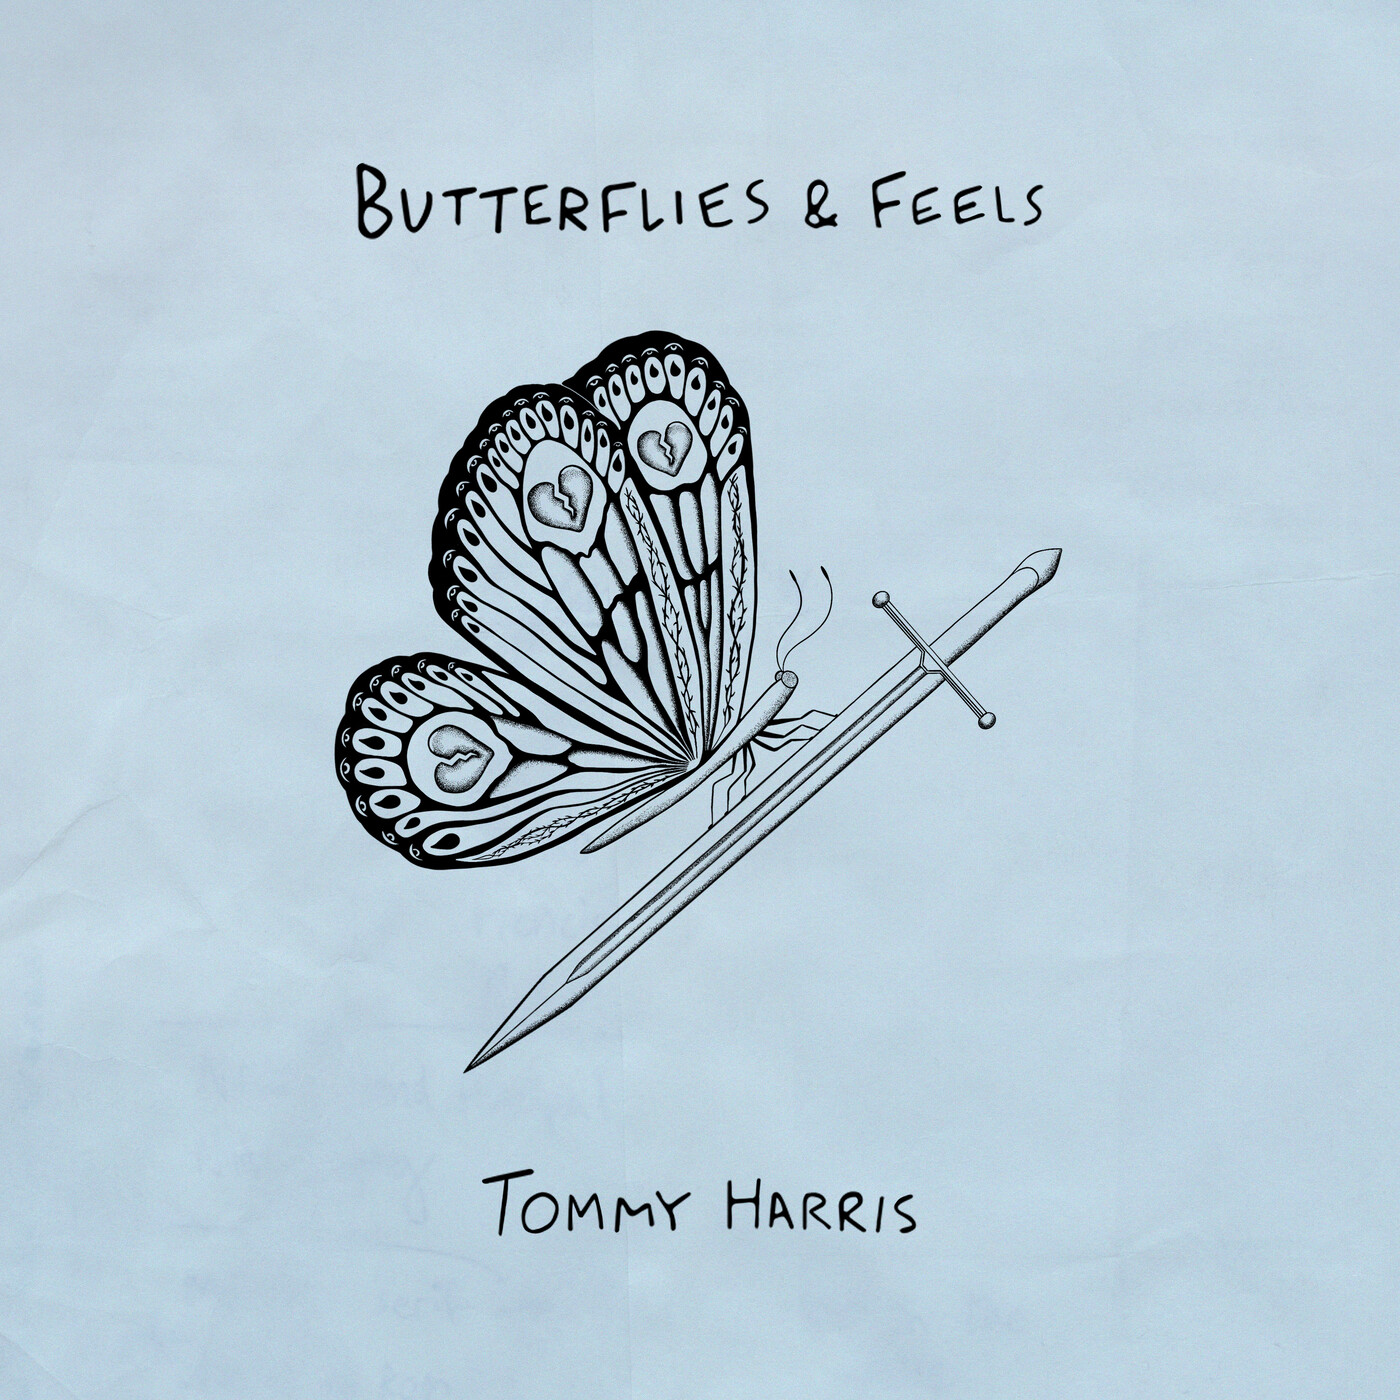 Харрис бабочка. Томми Харрис. Виш лист карт i feel Butterfly. Feeling butterflies